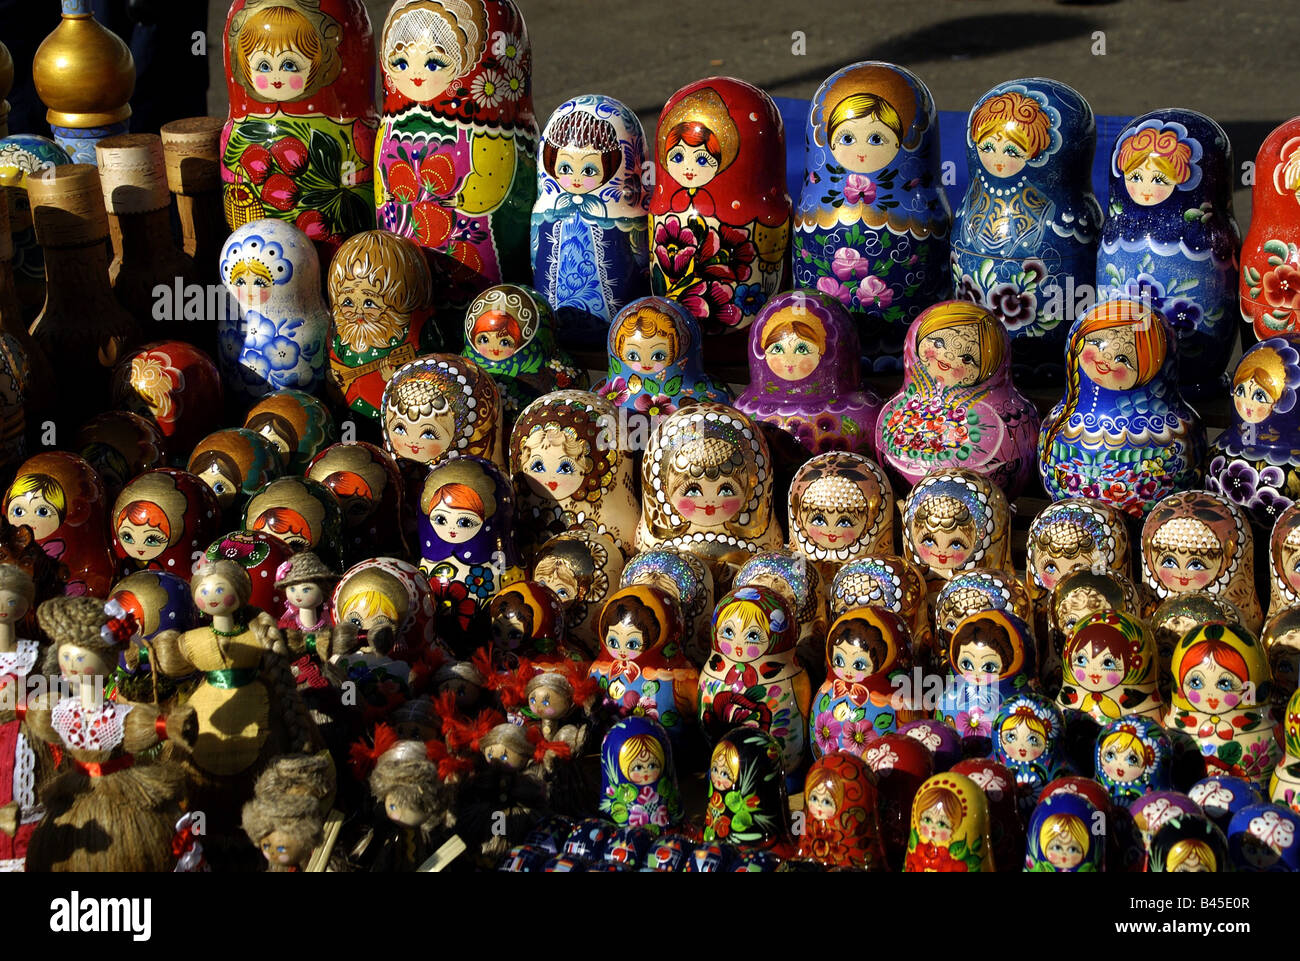 Géographie / billet, la Russie, le commerce, une boutique de souvenirs avec Matrjoschkas, poupées en bois typiquement russe, peint, colorés, poupée, arts et artisanat, souvenirs, Matrjoschka , Additional-Rights Clearance-Info-Not-Available- Banque D'Images